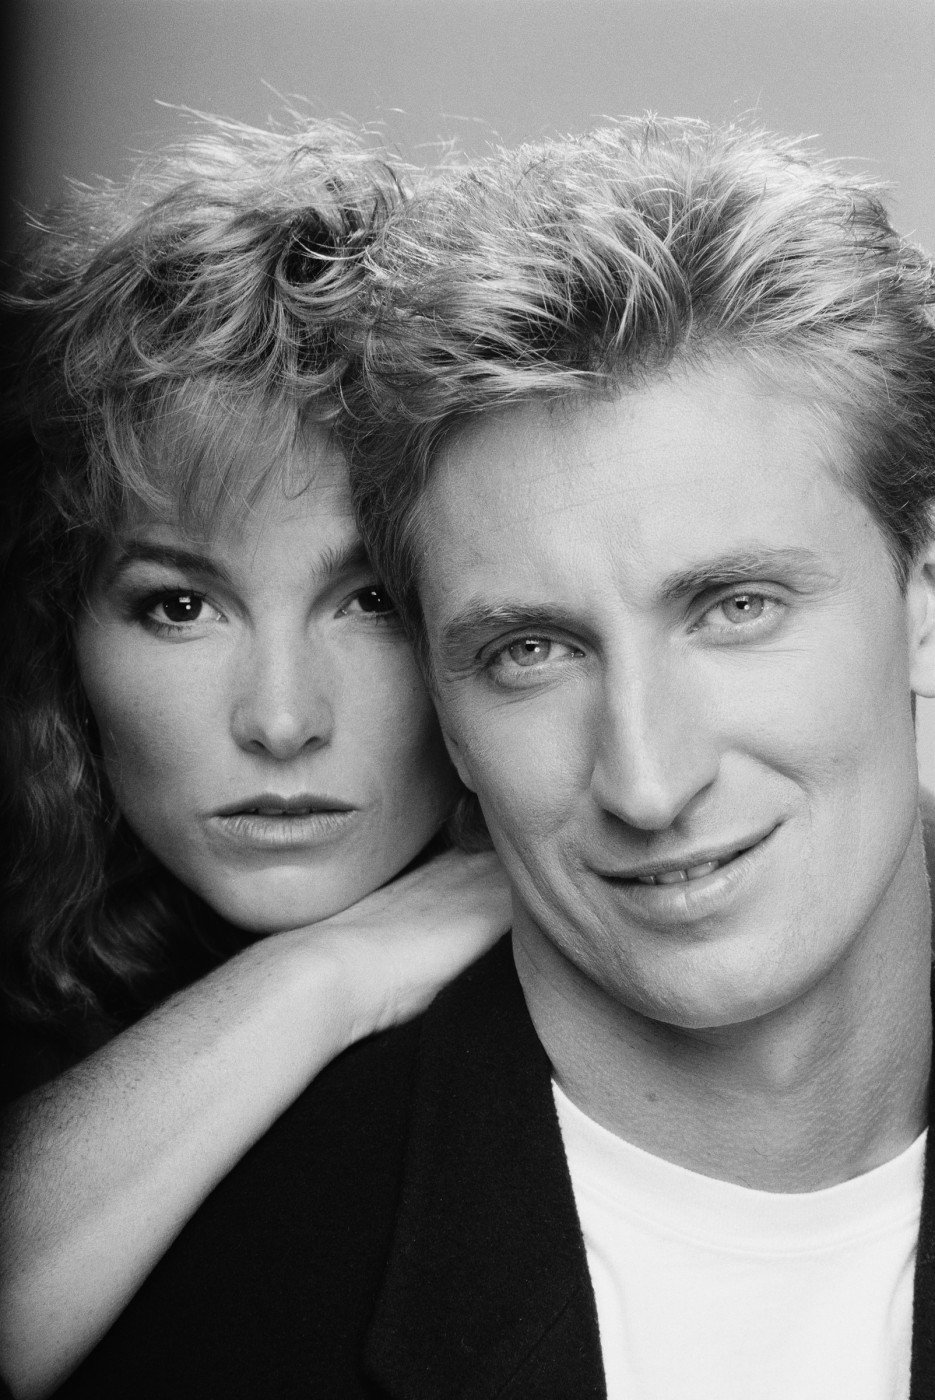 Rodiče Pauline - Janet a Wayne Gretzky